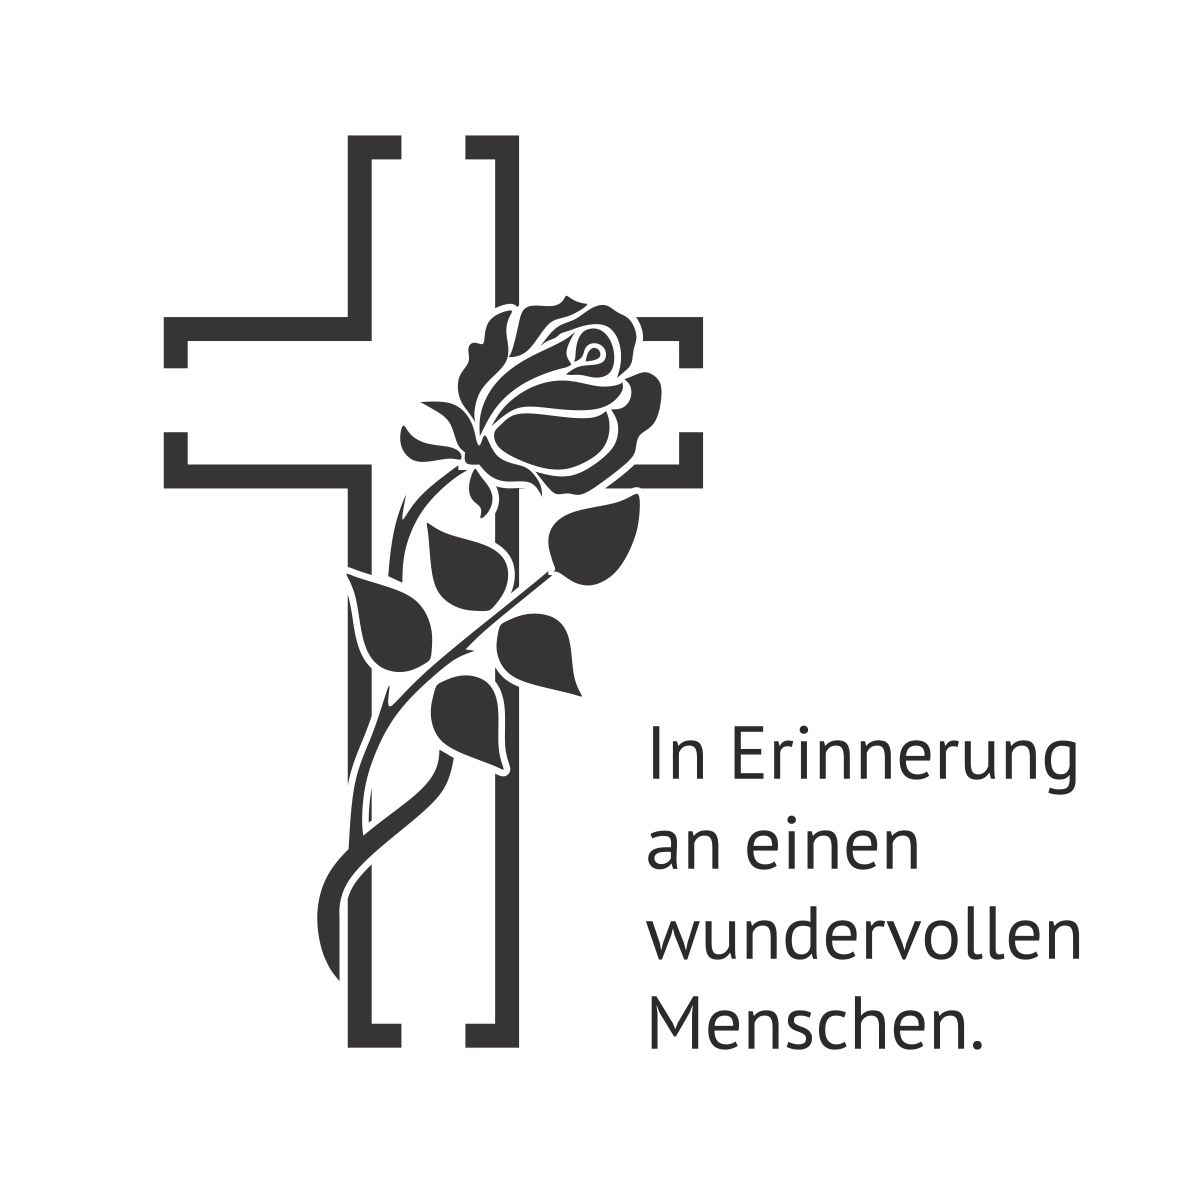 Motiv schwarzes Kreuz mit schwarzer Rose und Text "In Erinnerung an einen wundervollen Menschen."